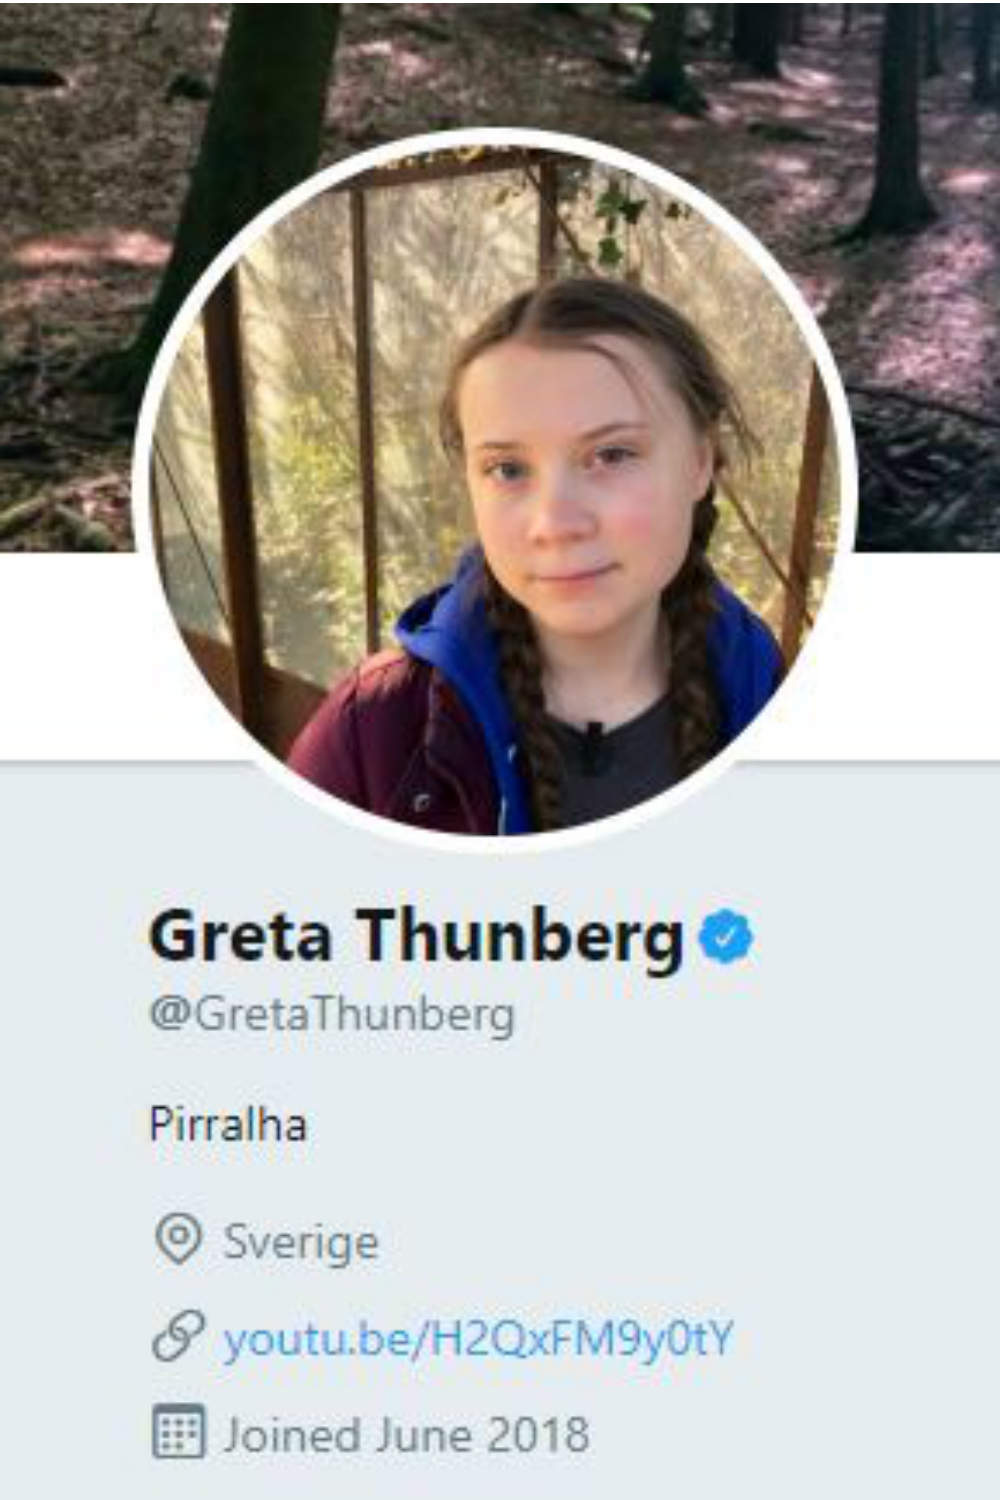 Greta Thunberg Twitter